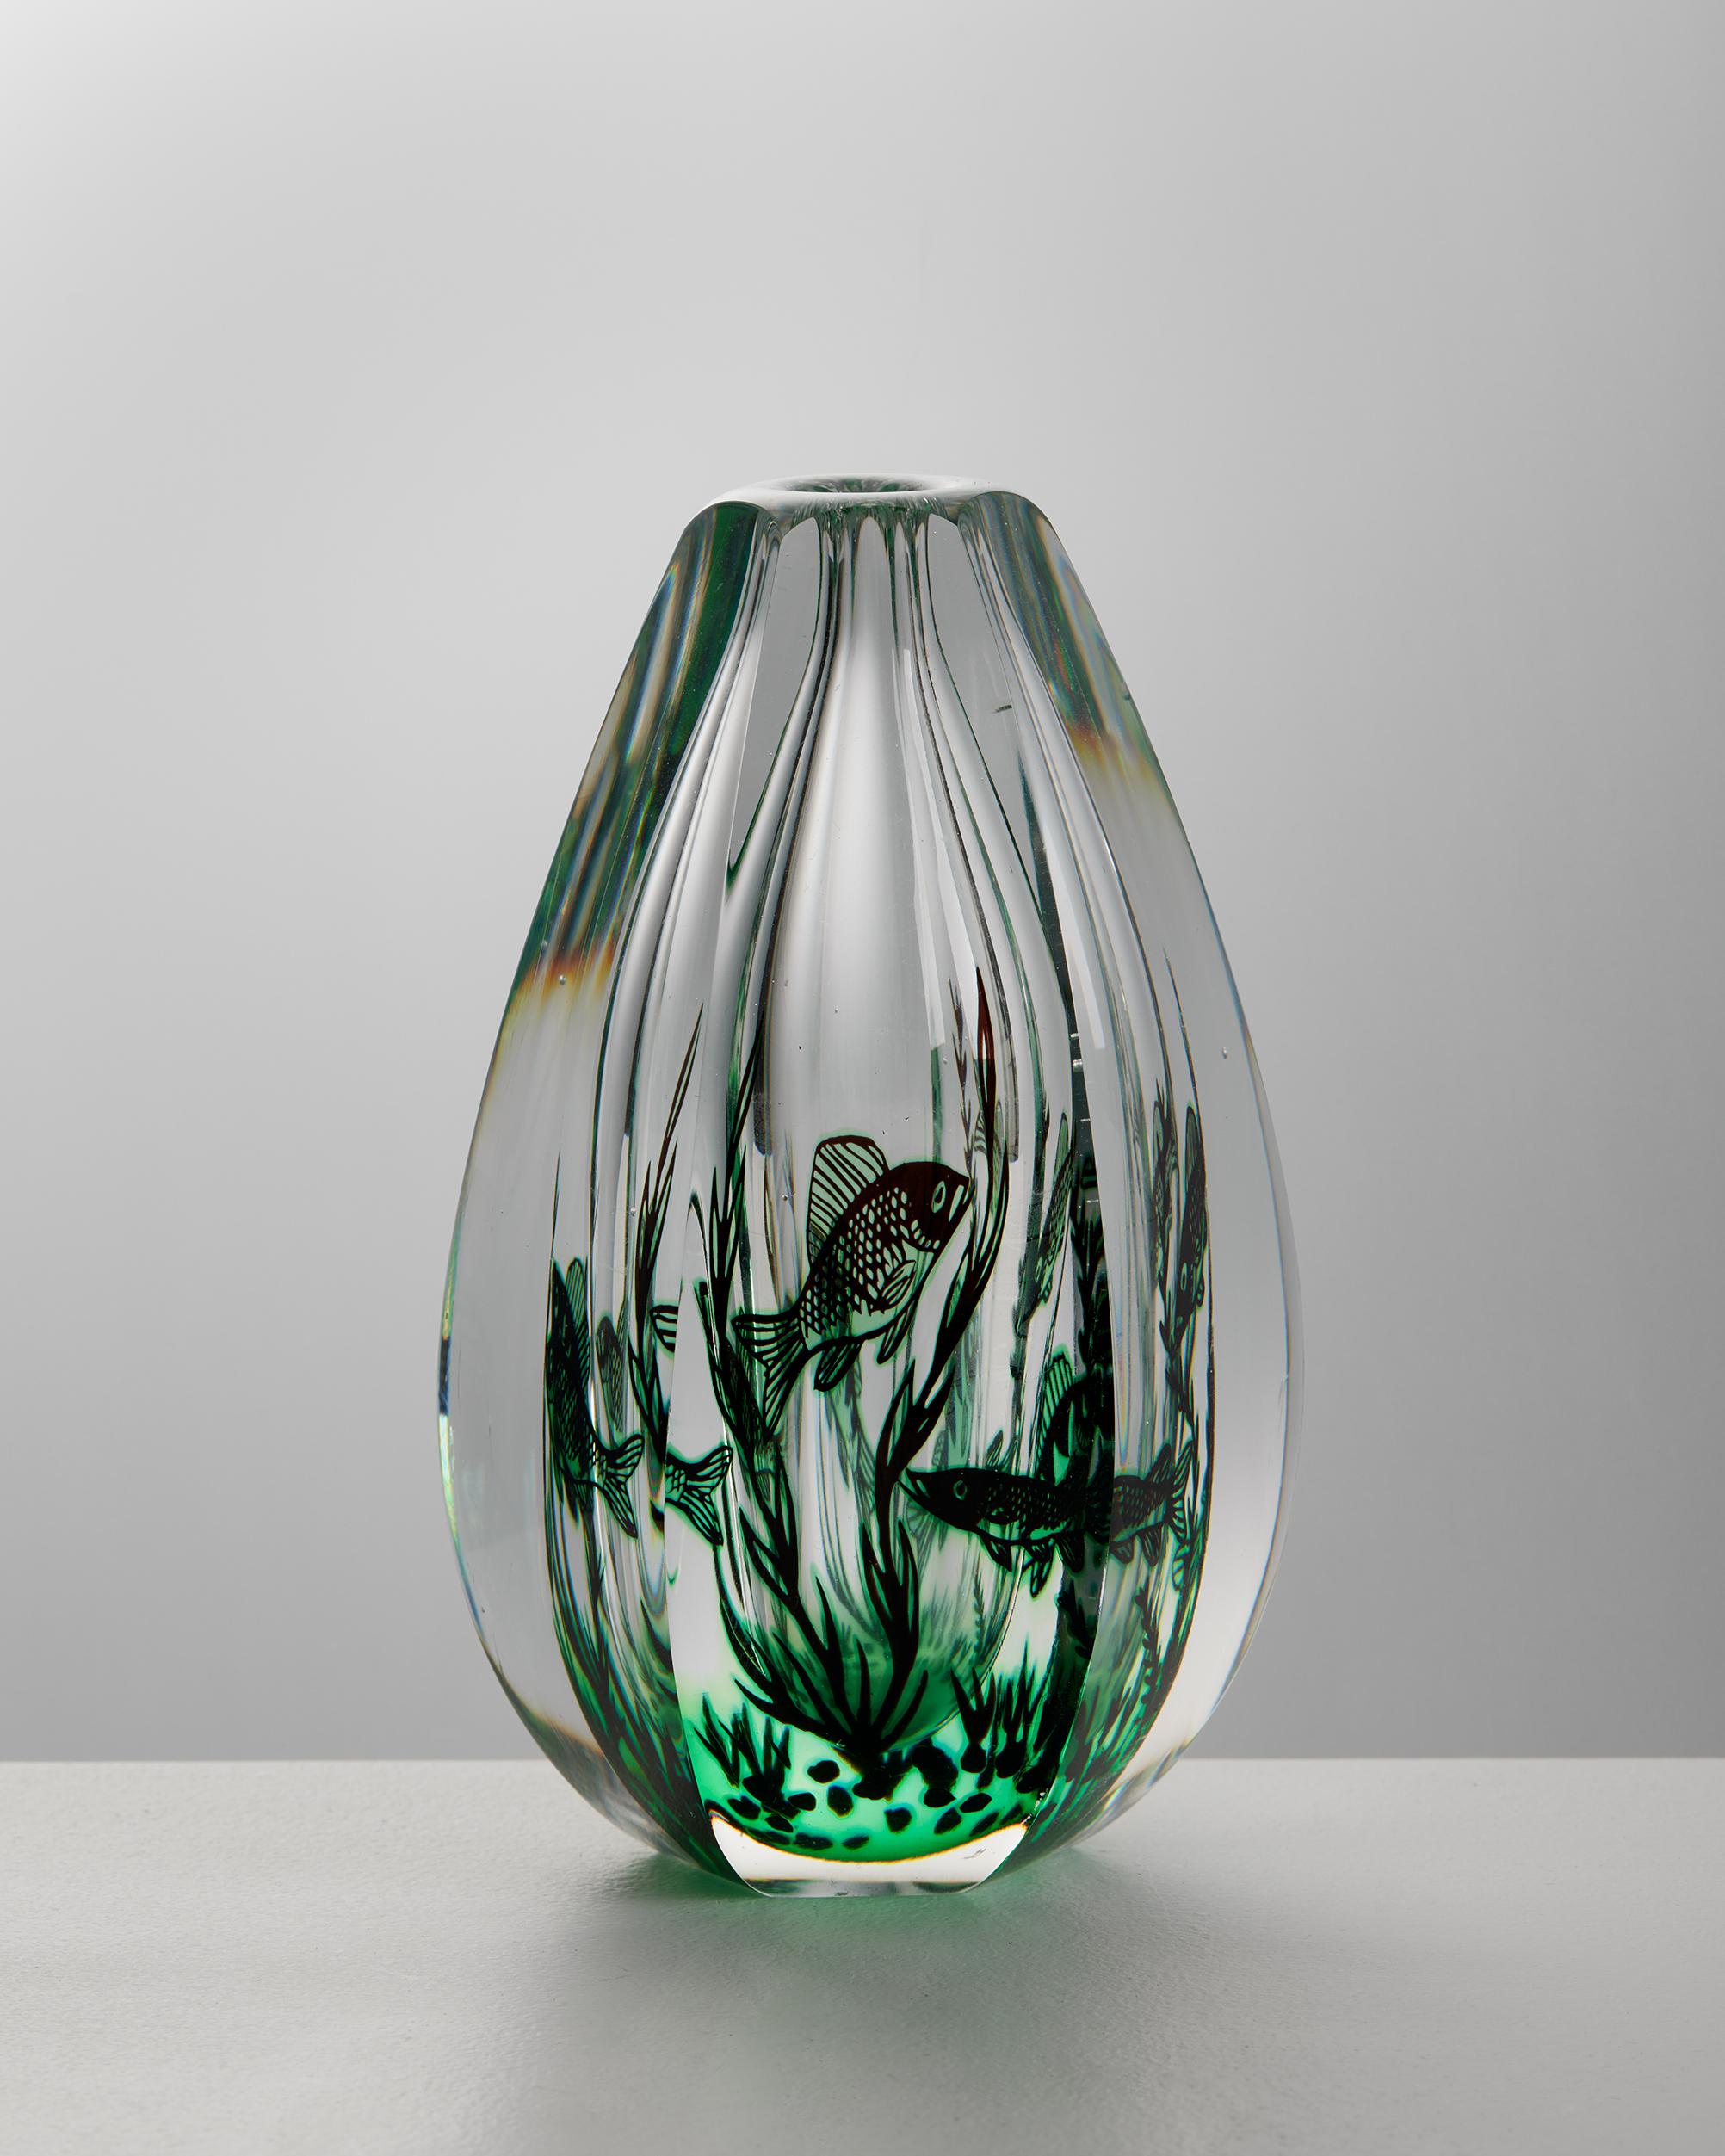 Vase 'Fish Graal', entworfen von Edward Hald für Orrefors,
Schweden, 1949.

Glas.

Unterschrieben.

Abmessungen: 
H: 16,5 cm / 6 1/2''
Durchmesser: 9 cm / 3 1/2''

Edward Hald (1883 - 1980) ist einer der bekannten schwedischen Glaskünstler, die für